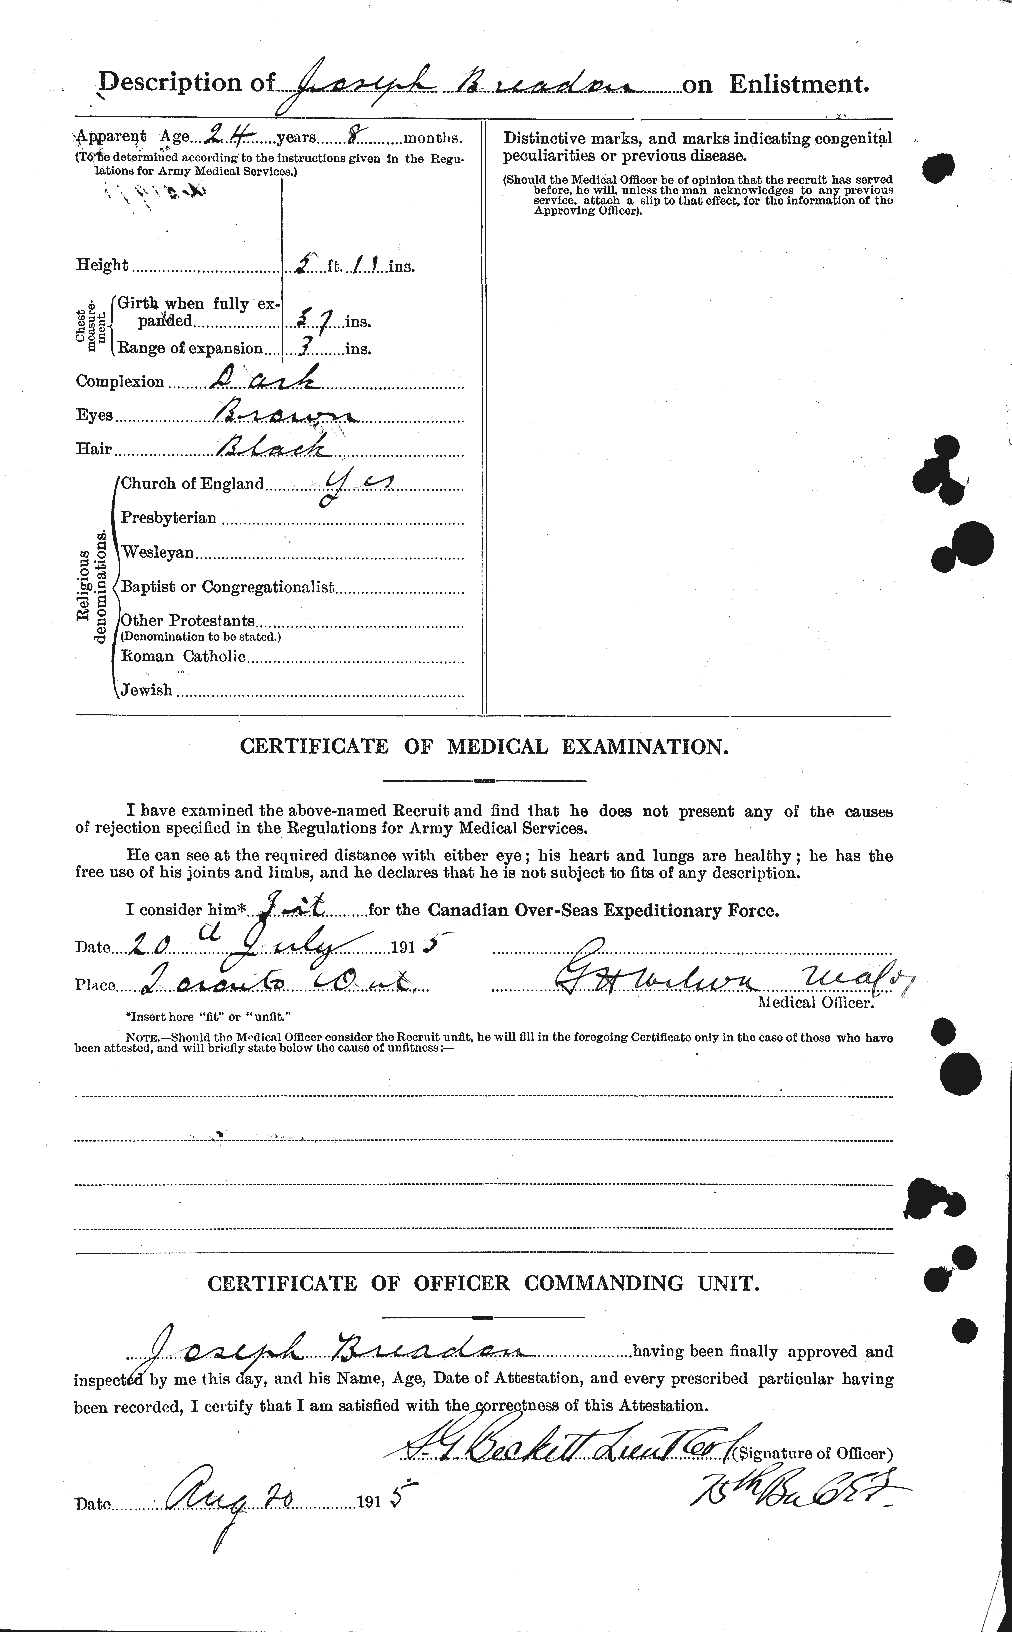 Dossiers du Personnel de la Première Guerre mondiale - CEC 262723b